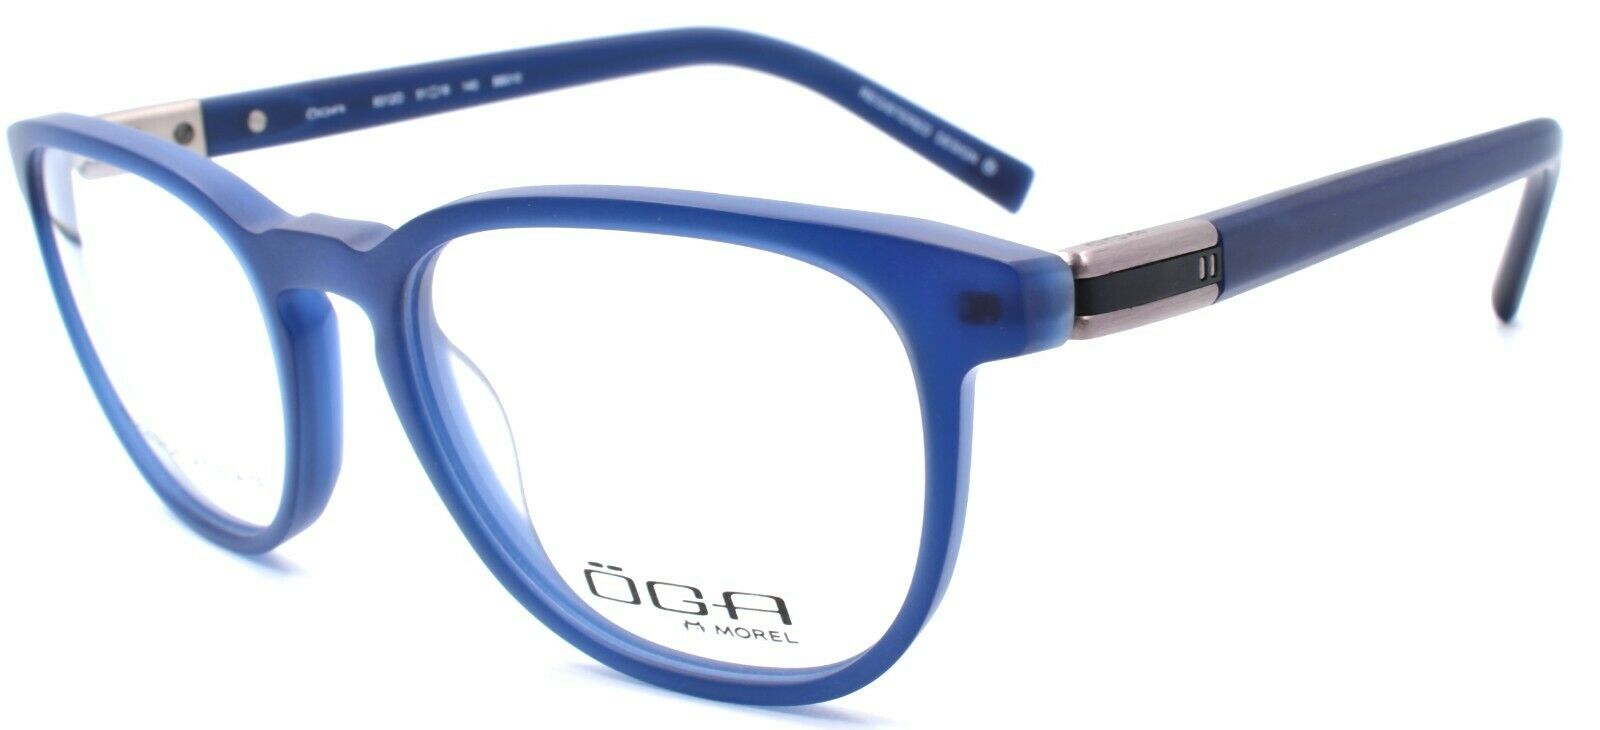 1-OGA by Morel 8312O BB010 Men's Eyeglasses Frames 51-18-140 Blue-3604770905649-IKSpecs